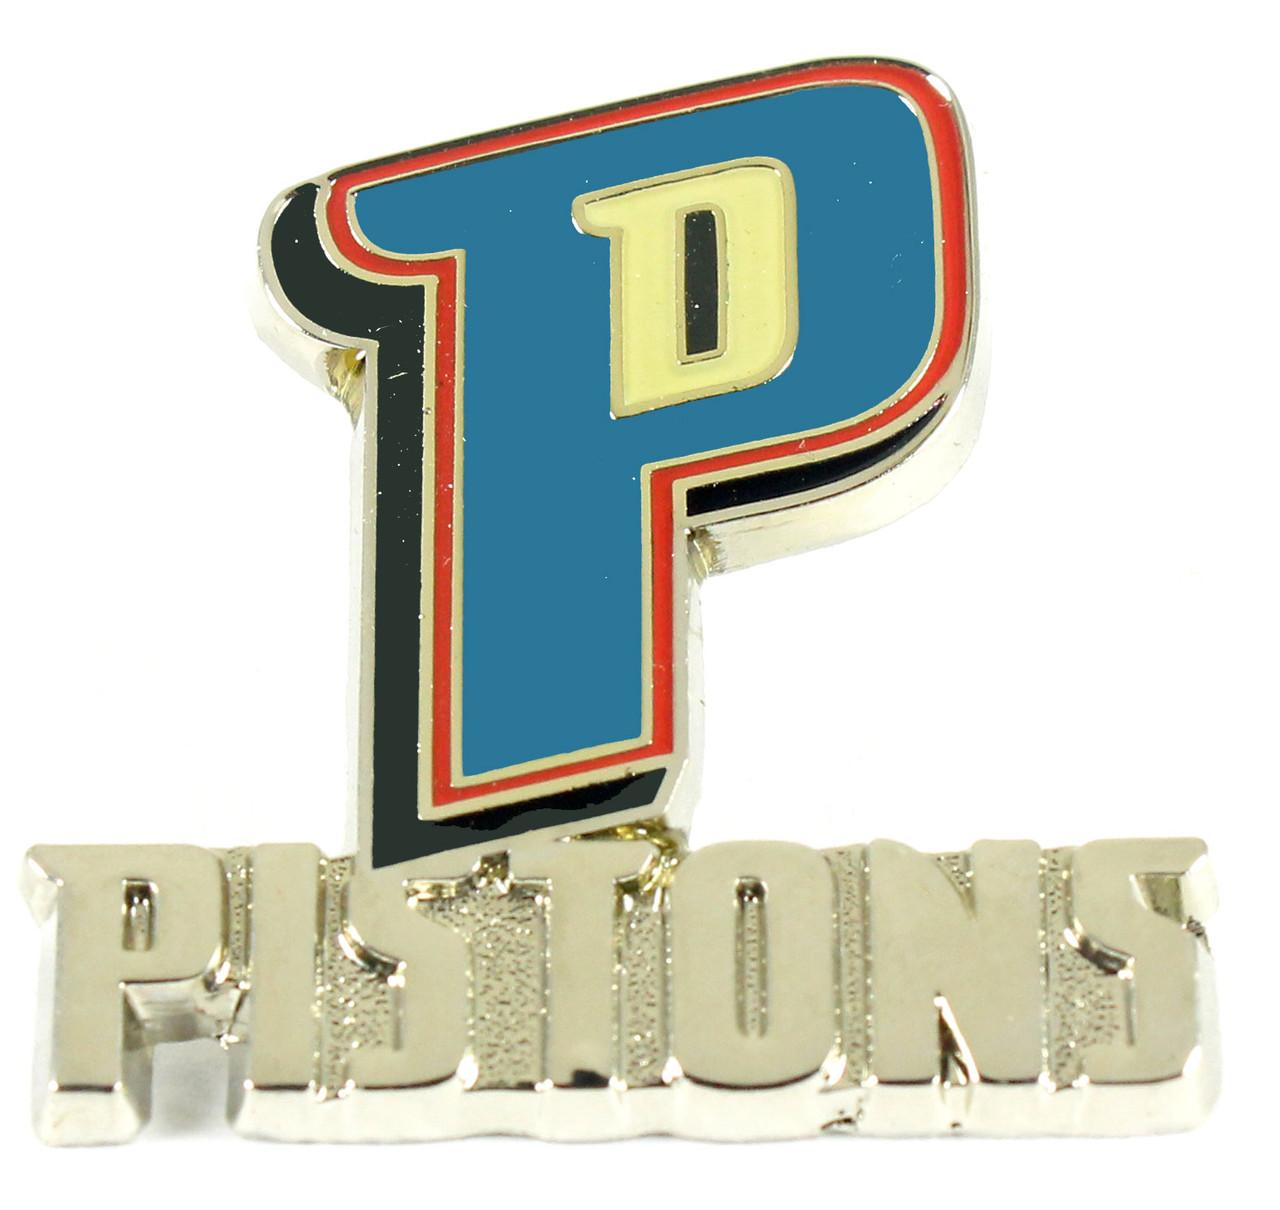 Detroit Pistons Logo Stock Illustrations – 55 Detroit Pistons Logo